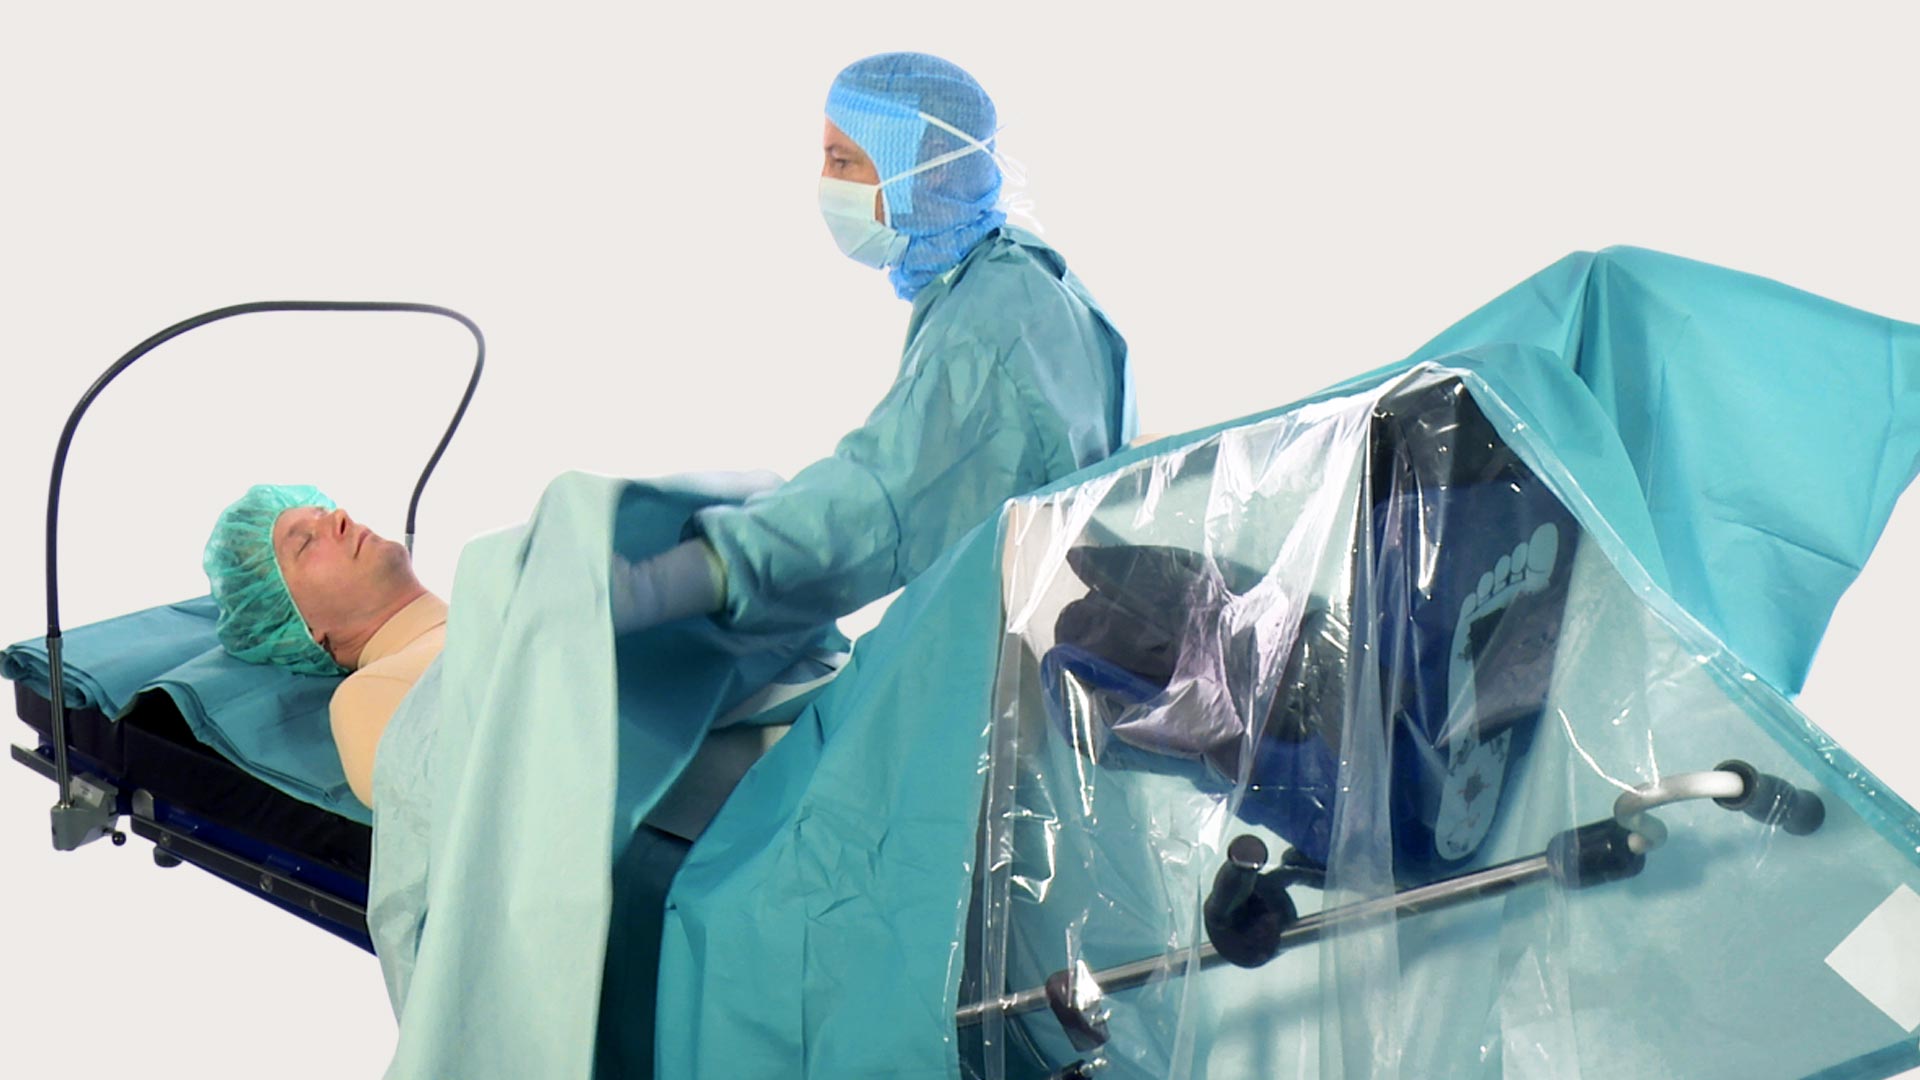 Professionista sanitario mentre effettua un drappeggio per una procedura chirurgica utilizzando i teli BARRIER.